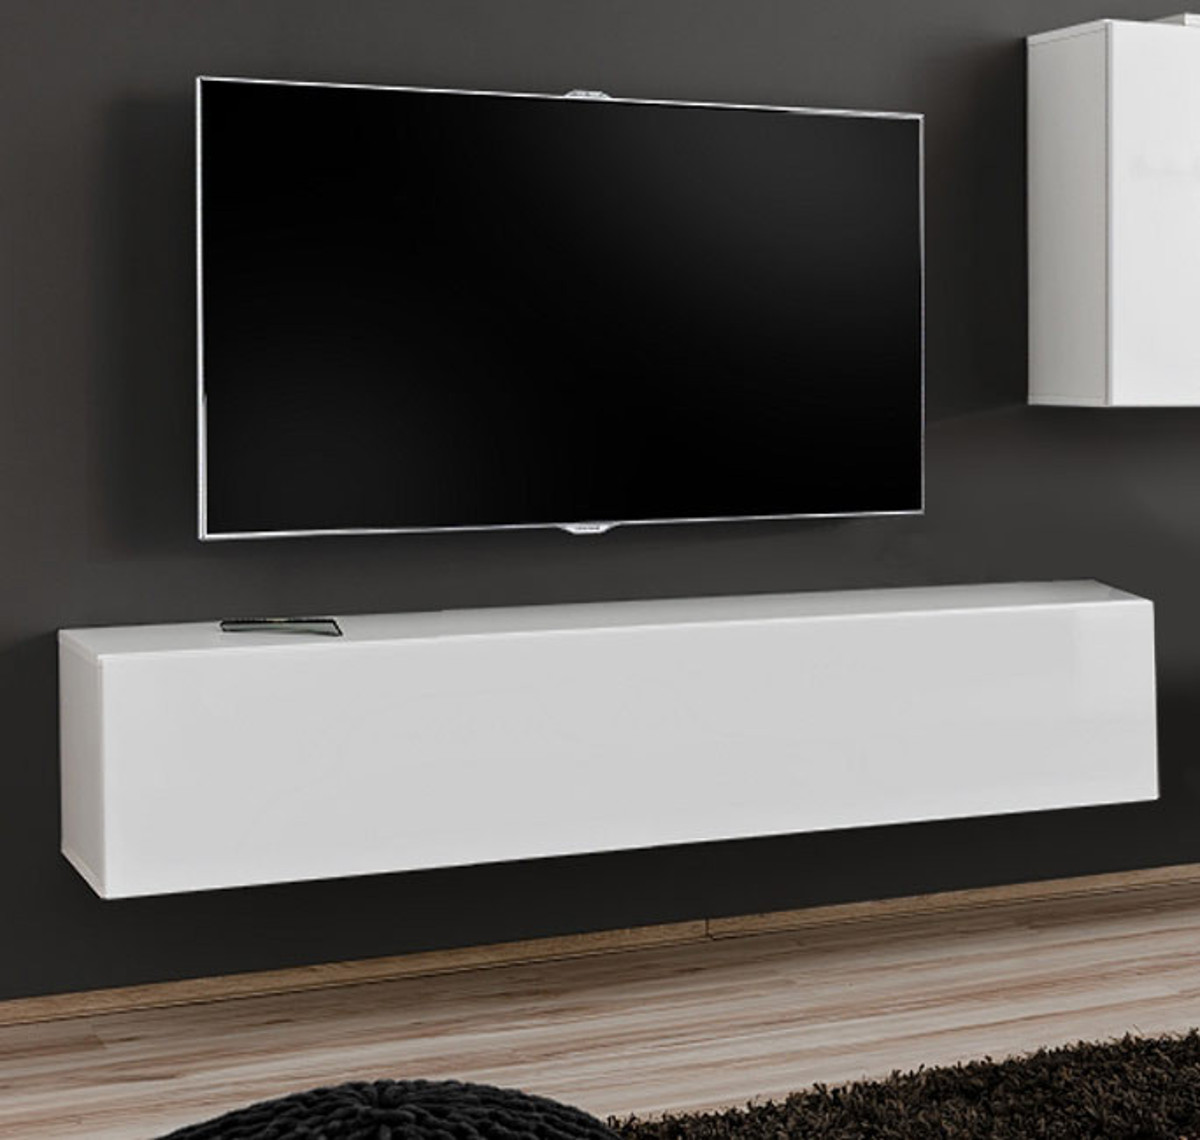 Imagen de Mueble TV modelo Baza 120x30 en color blanco